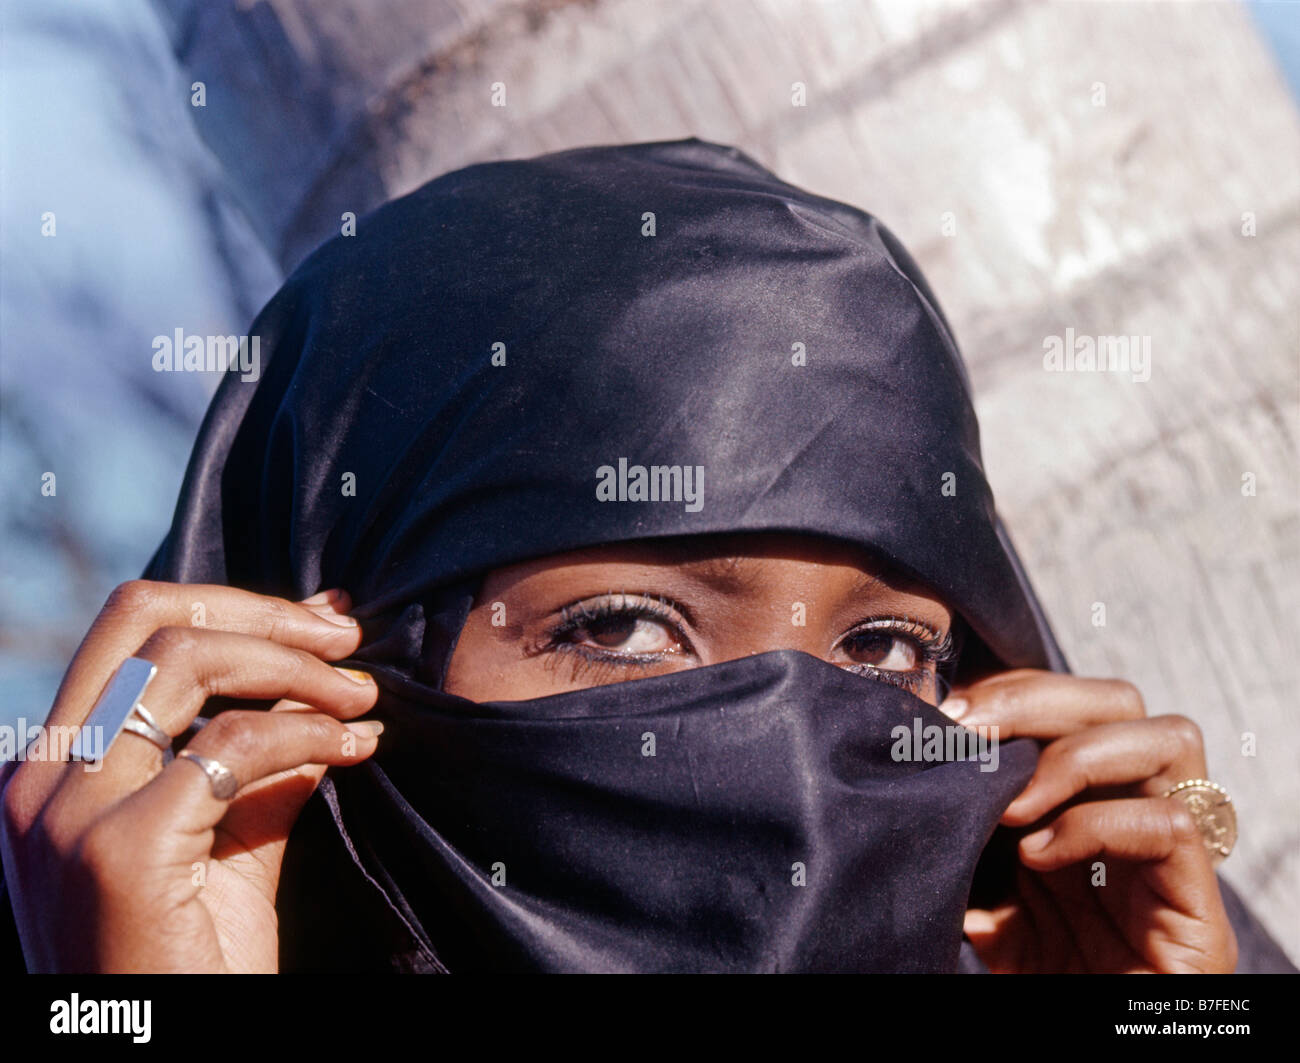 Femme voilee musumane voilee femme musulmane portant le niqab musulmans Comores l'islam religion islamique vêtements religieux couvrir modes modeste Banque D'Images